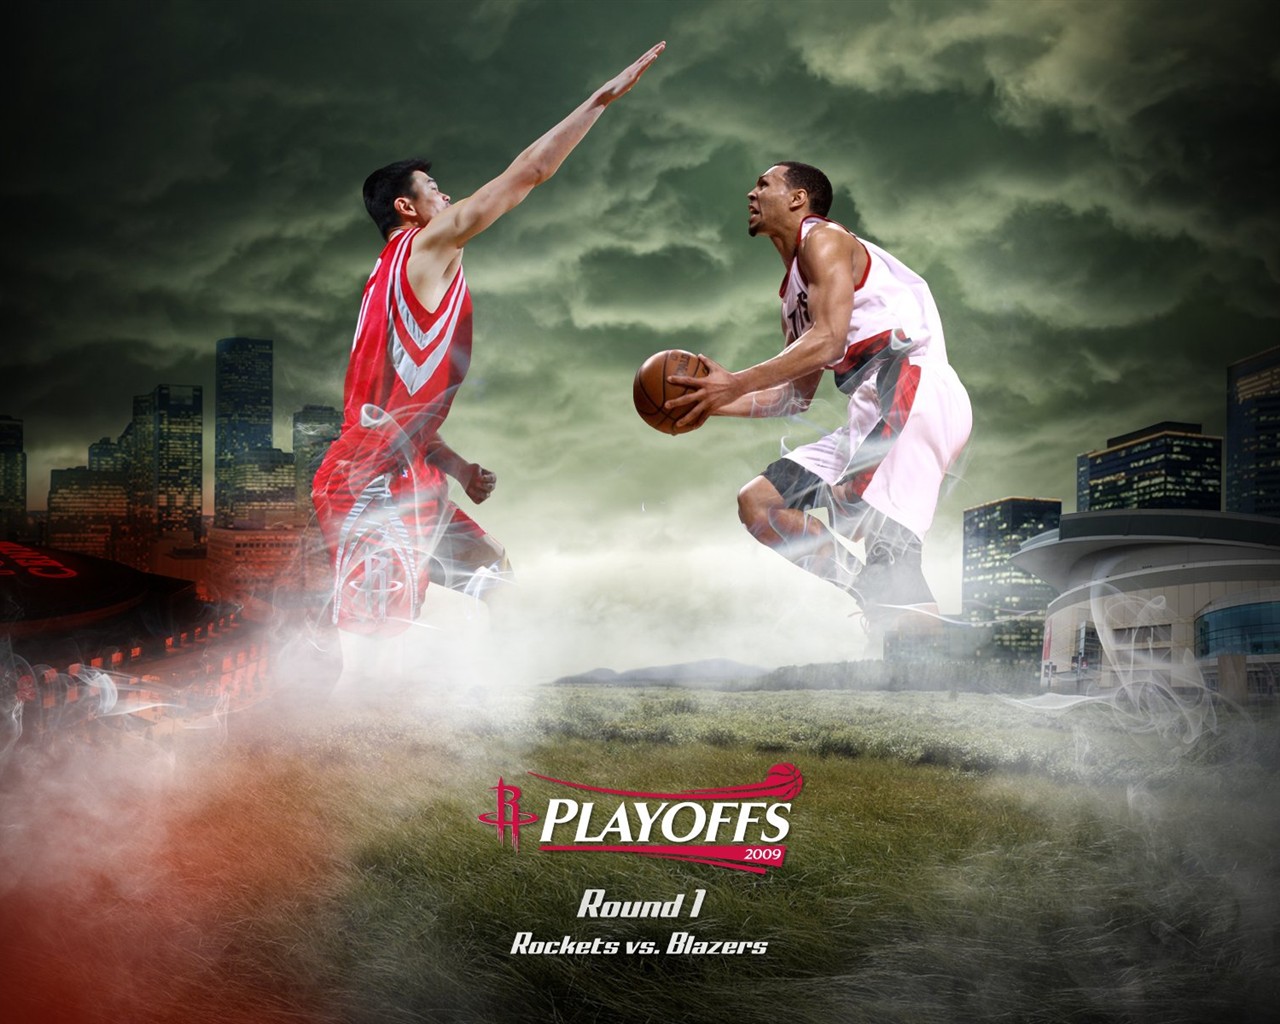 NBA Houston Rockets 2009 fondos de escritorio de los playoffs #1 - 1280x1024